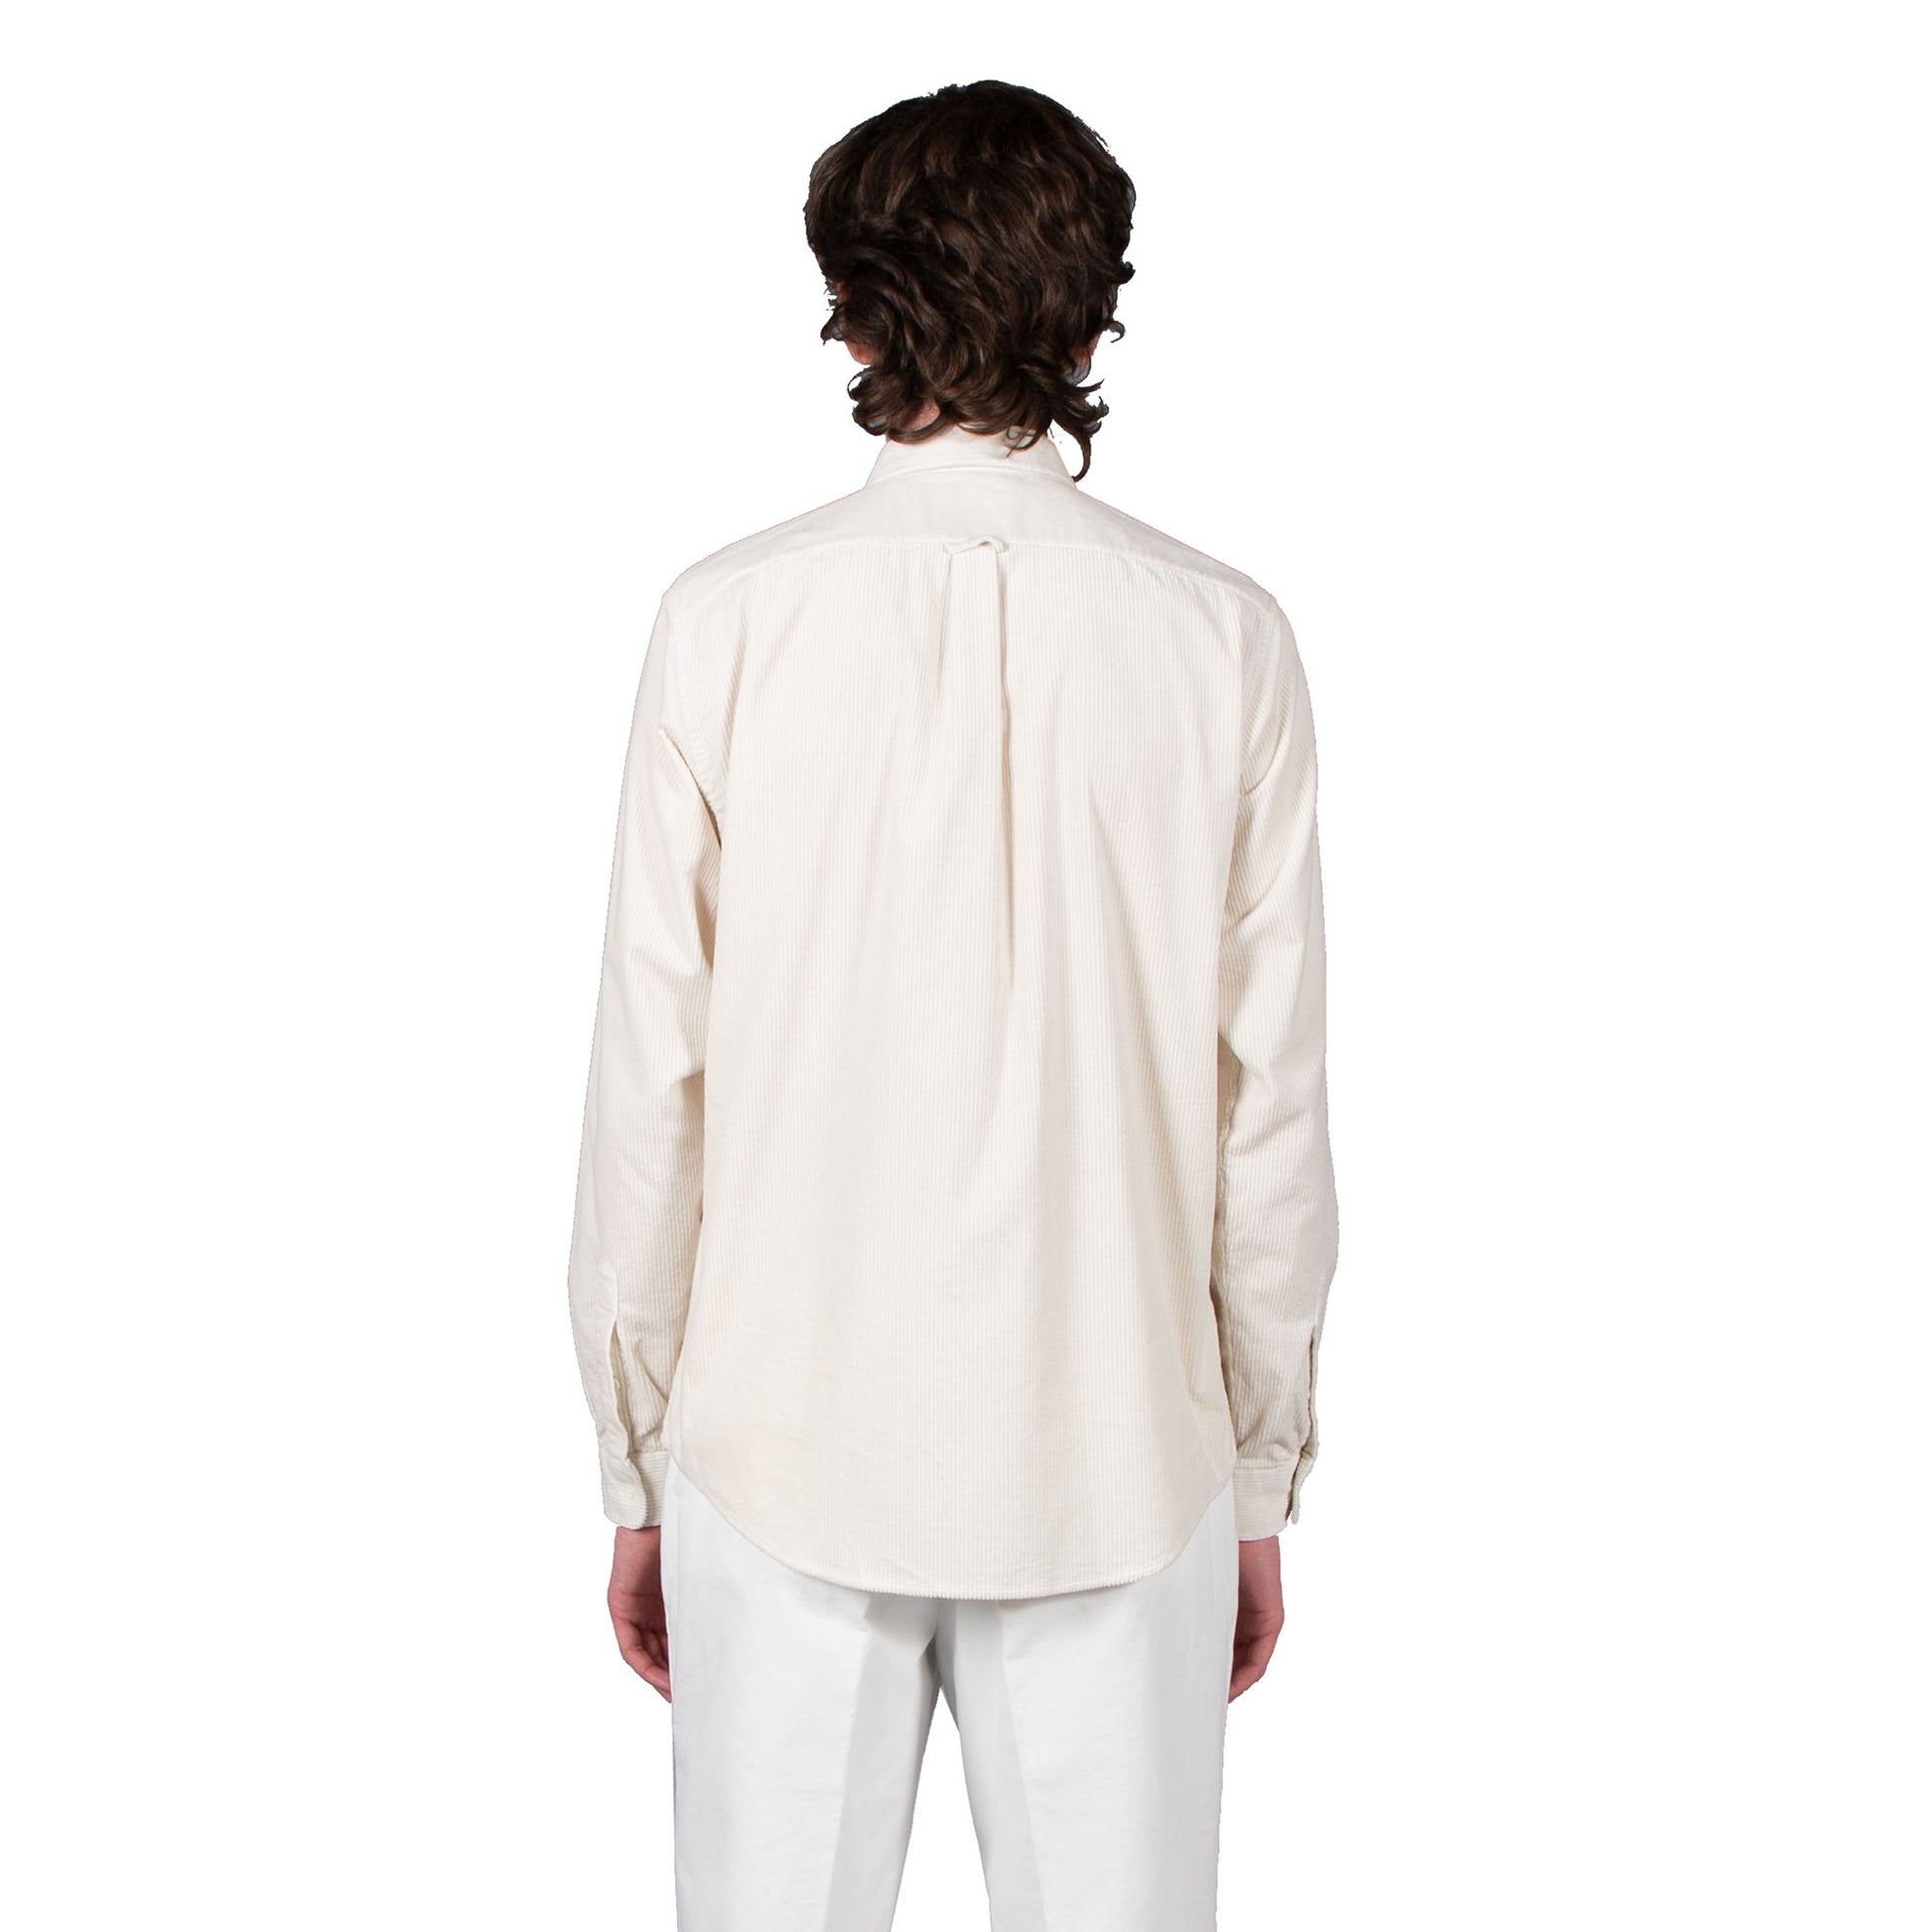 Shop Schnayderman's shirt online unbutton cord off white